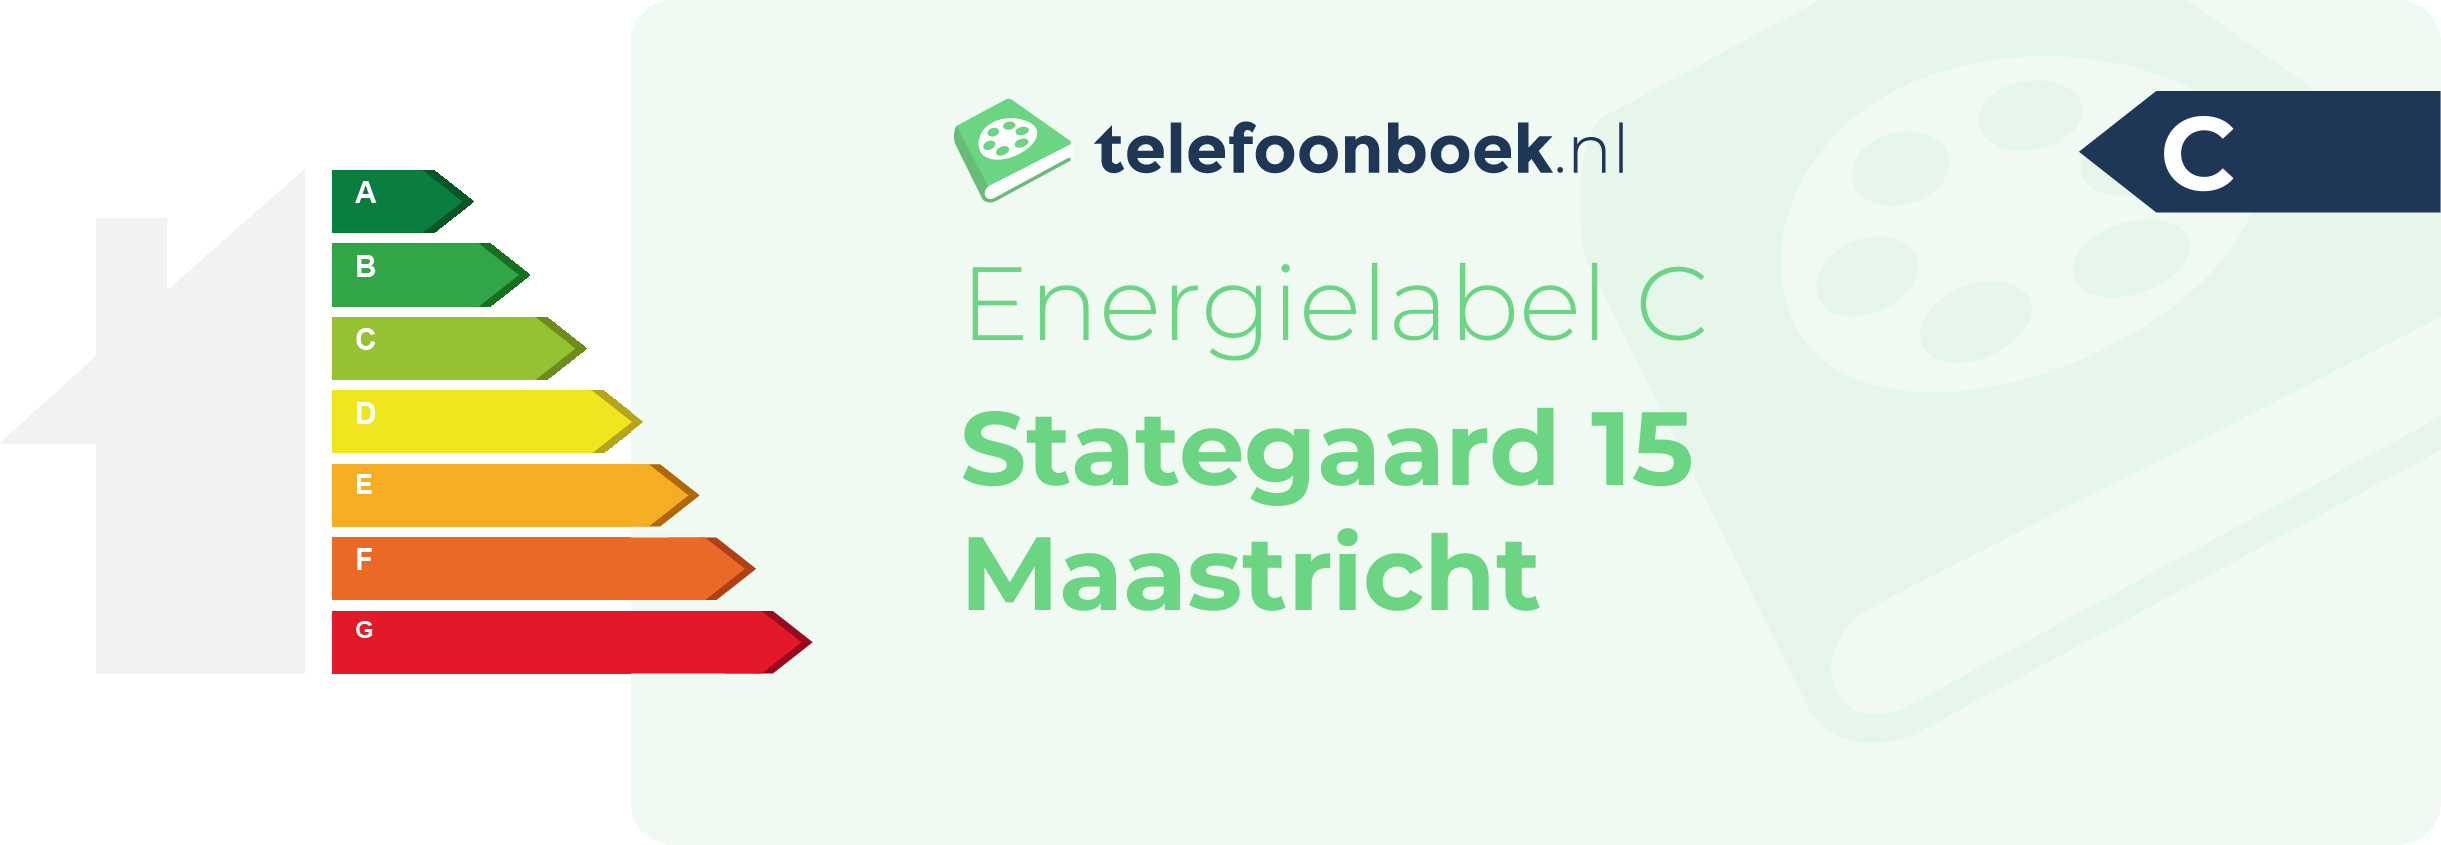 Energielabel Stategaard 15 Maastricht